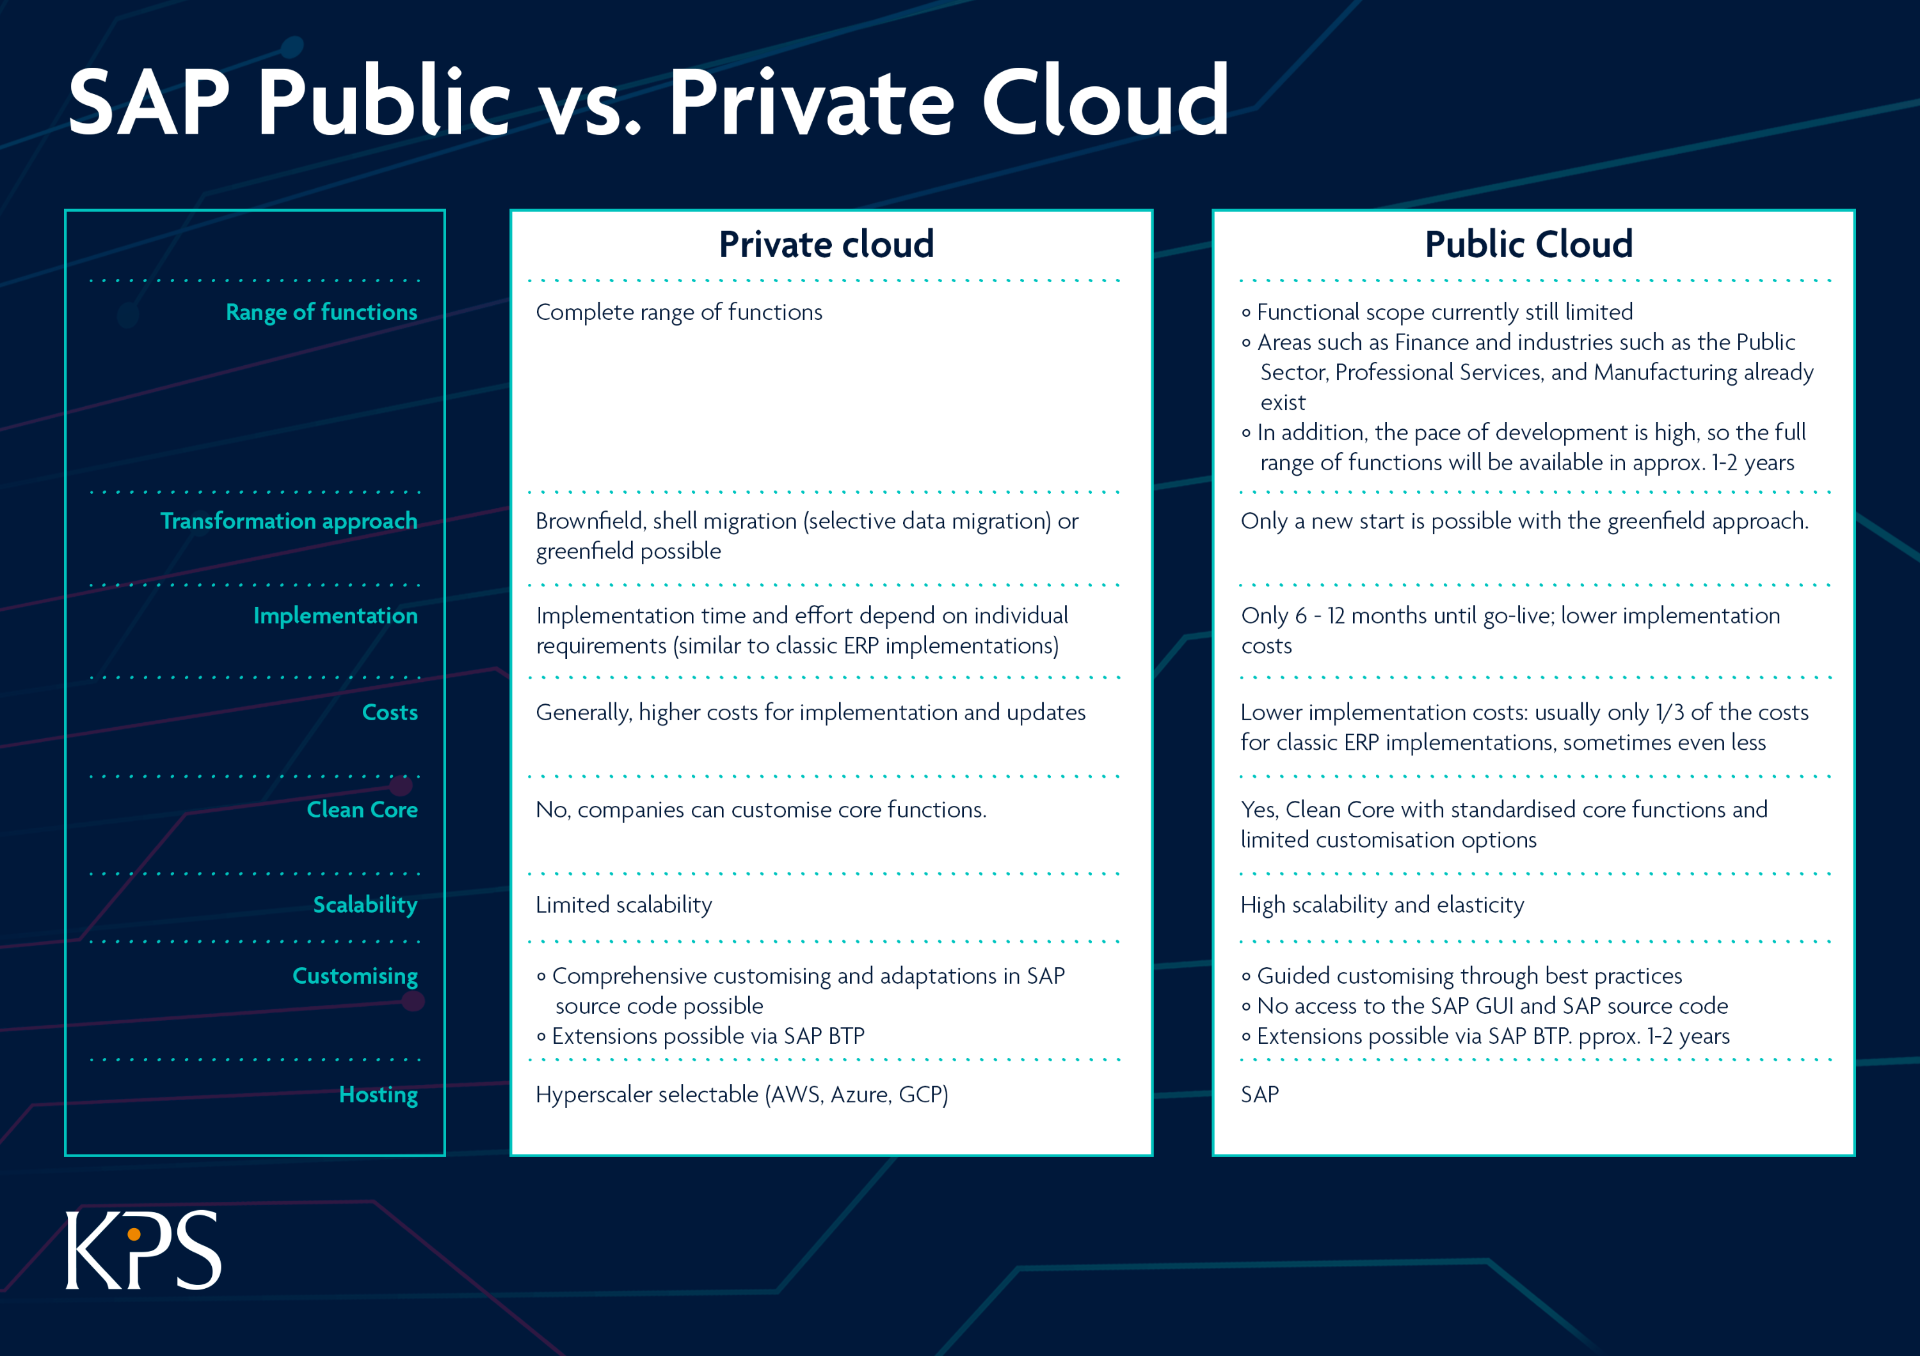 SAP Public vs Private Cloud: A comparison